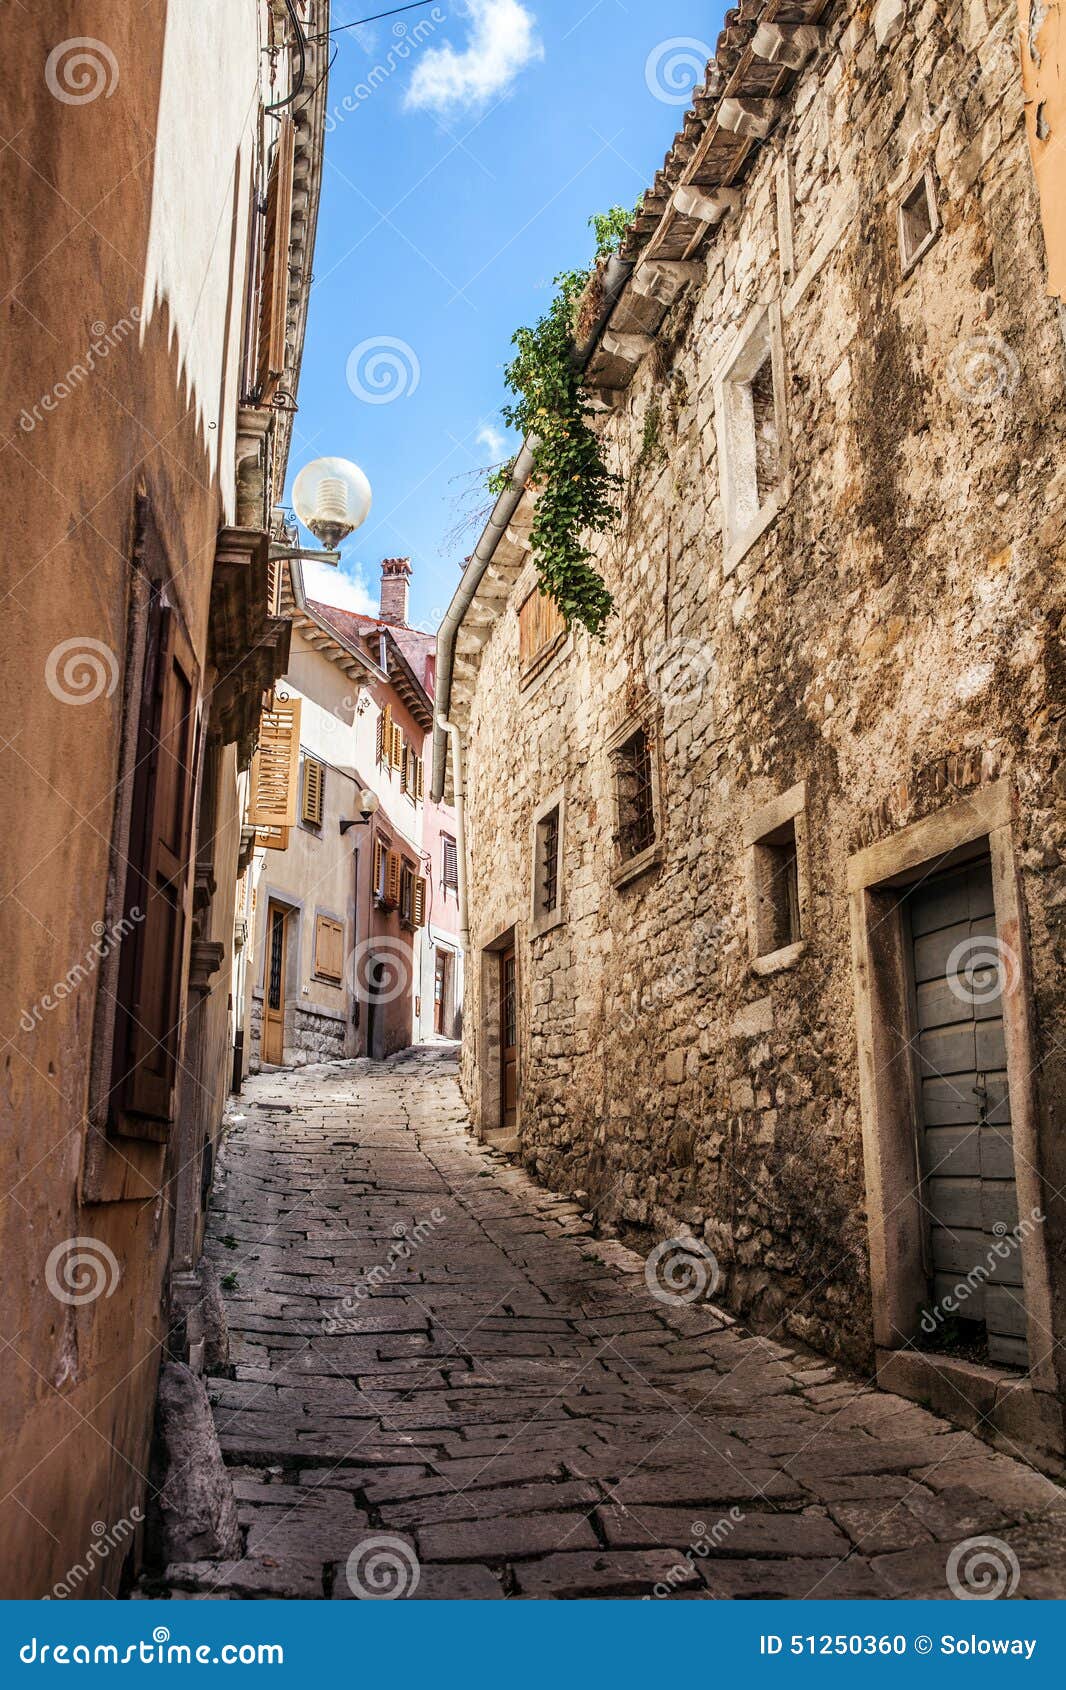 beatiful narrow street in mediterranean europe, croatia